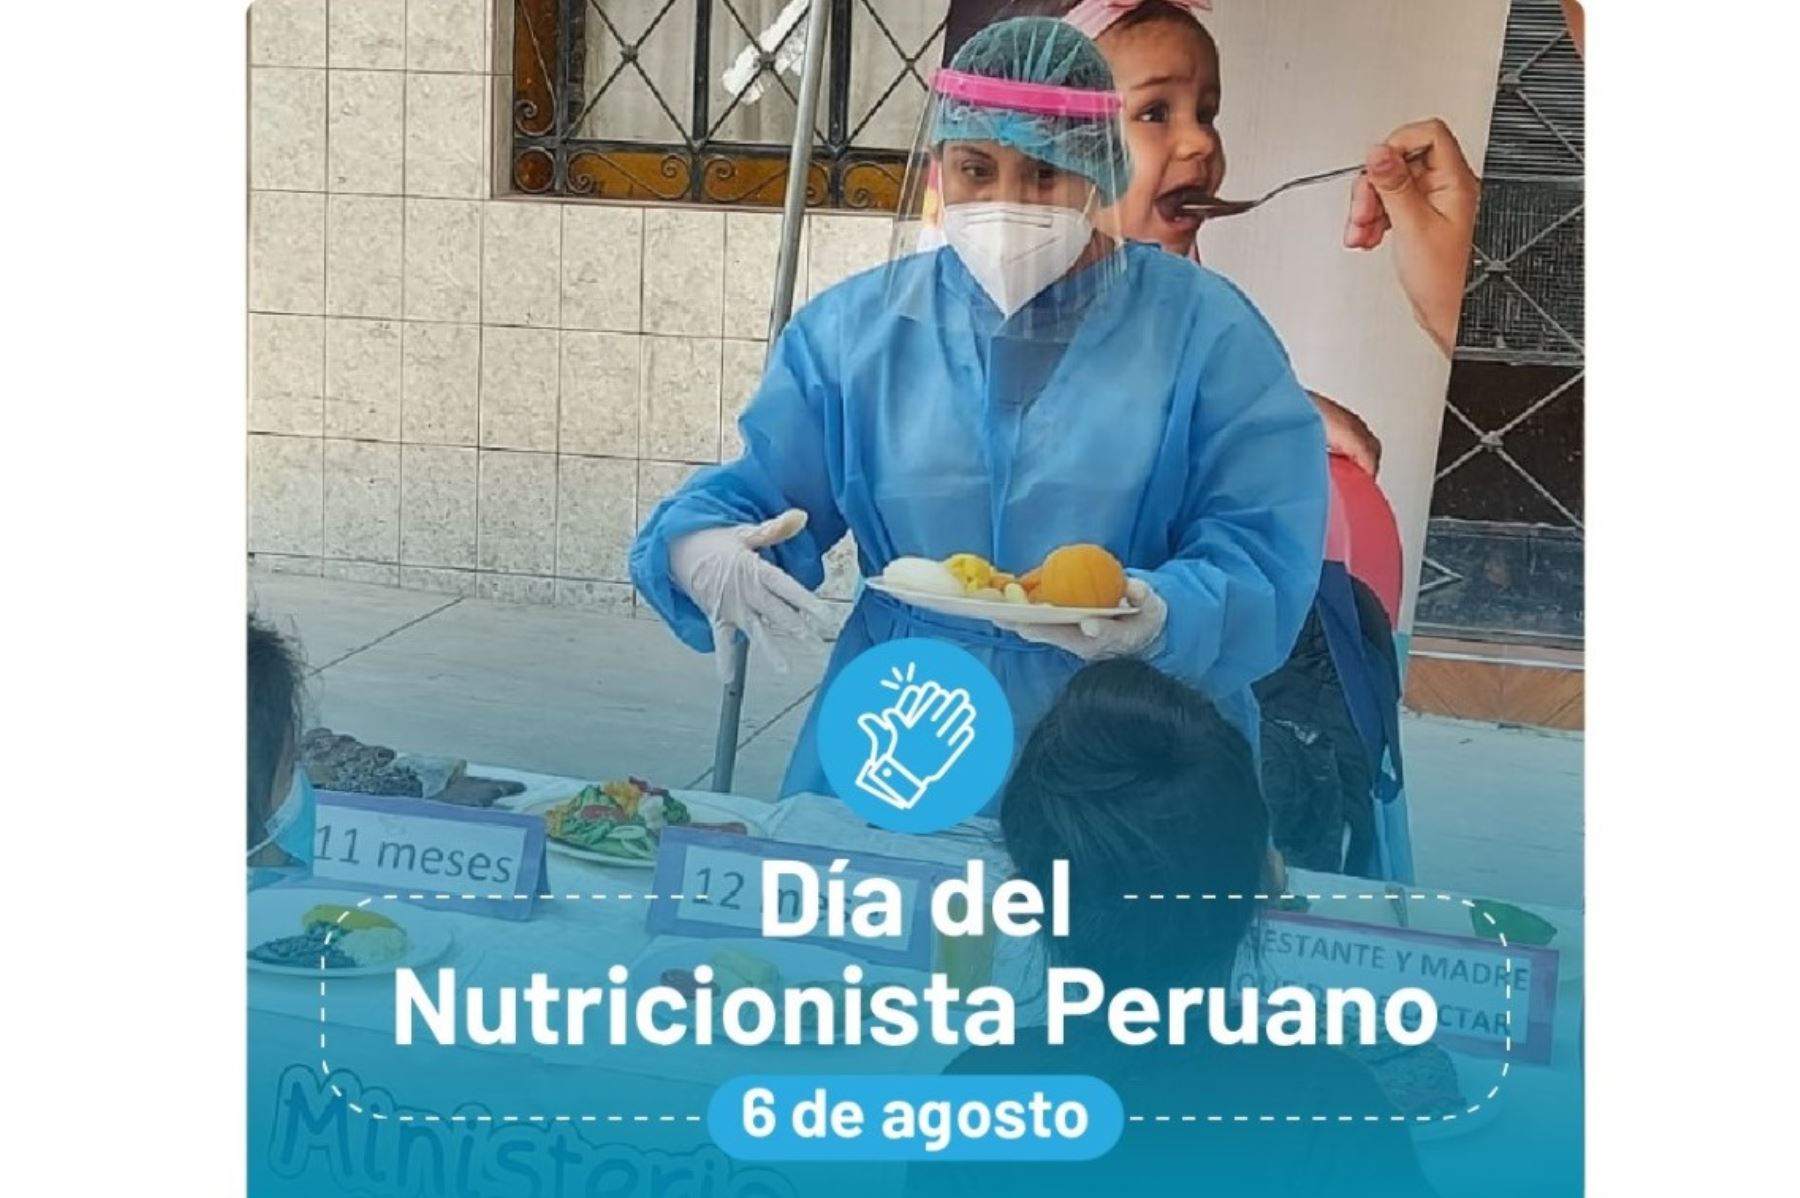 Pieza gráfica del Minsa elaborada por el Día del Nutricionista Peruano.